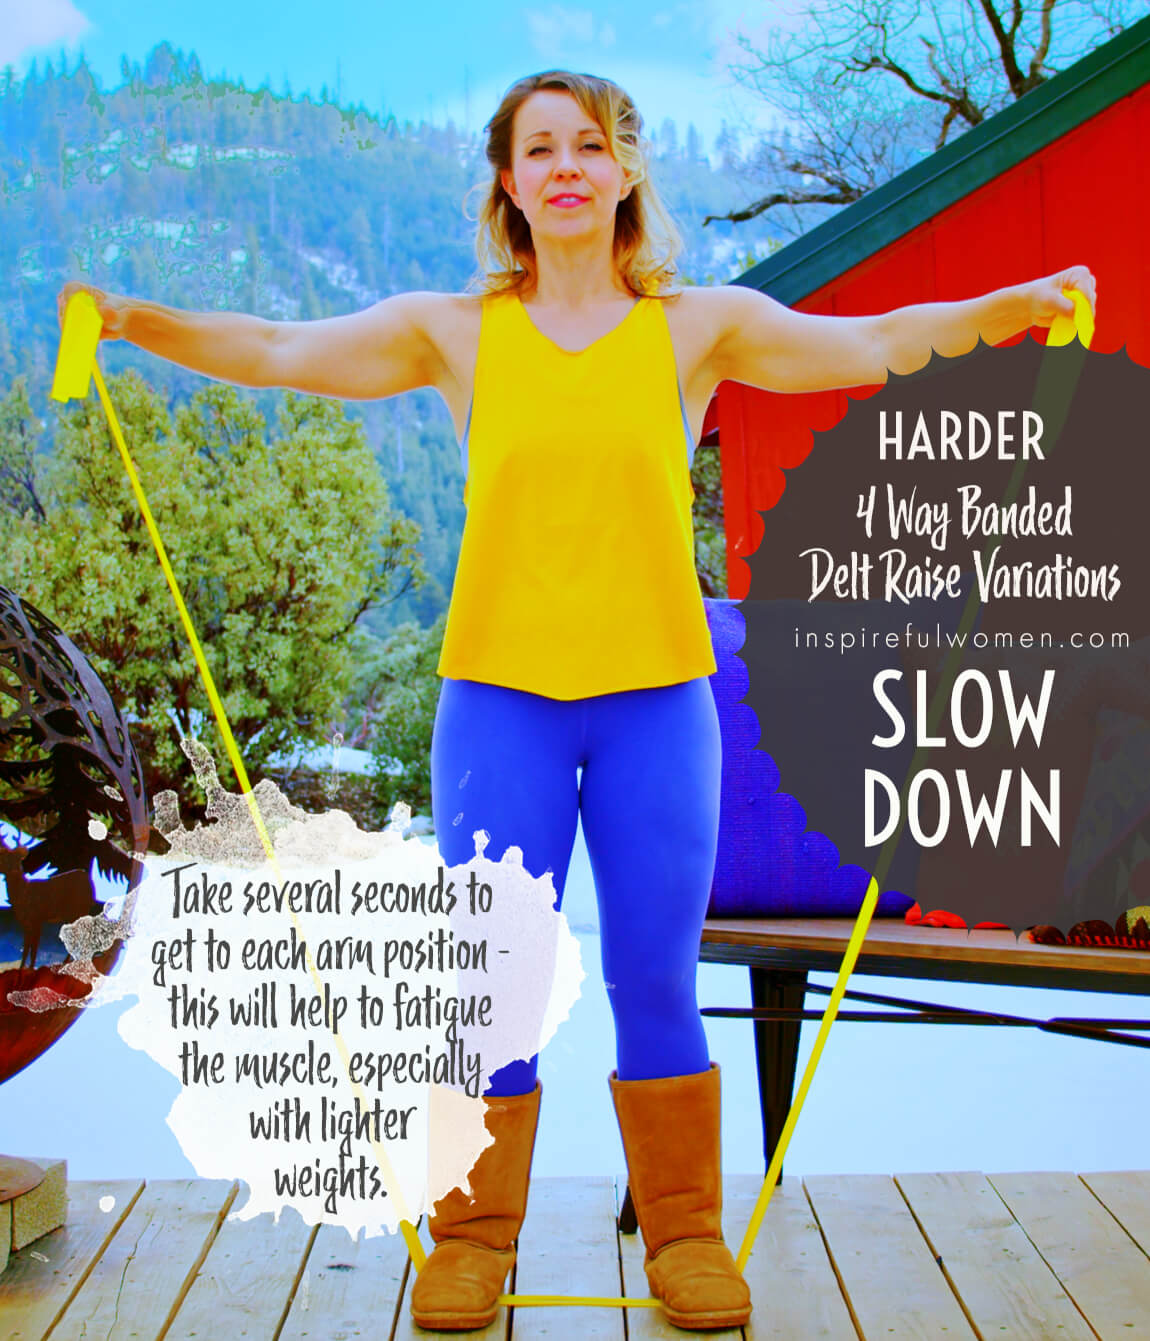 slow-down-4-way-resistance-band-delt-raise-shoulder-exercise-variation-harder